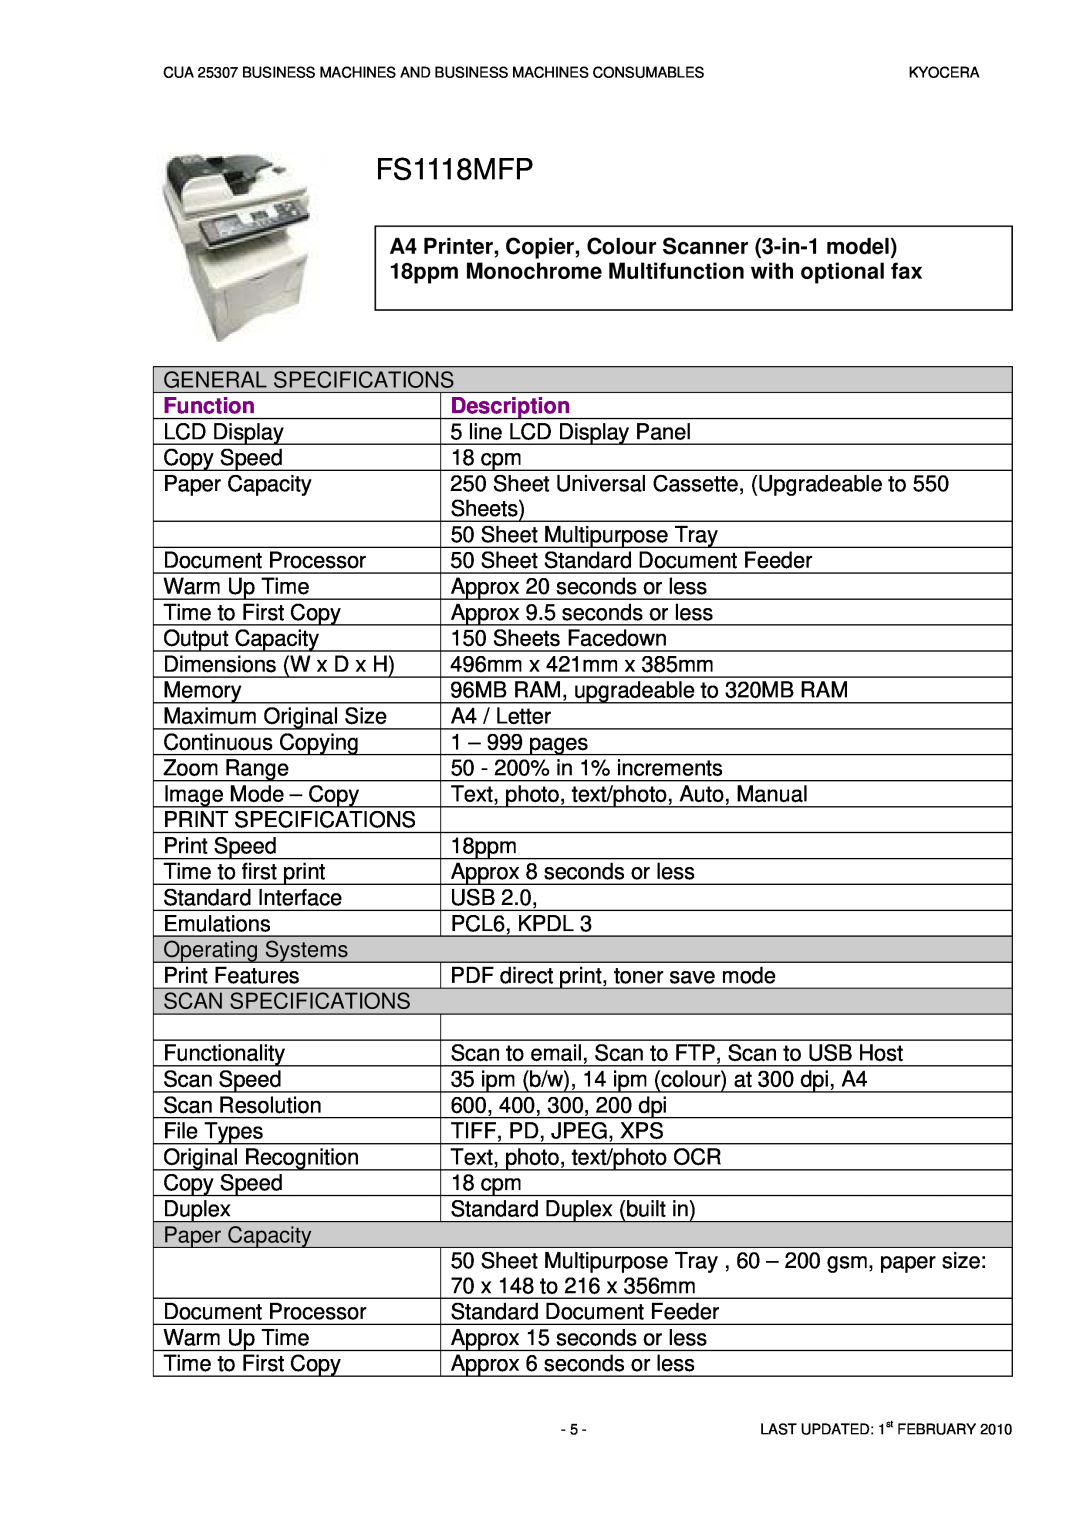 Kyocera CUA 25307 manual FS1118MFP, Description, Function 